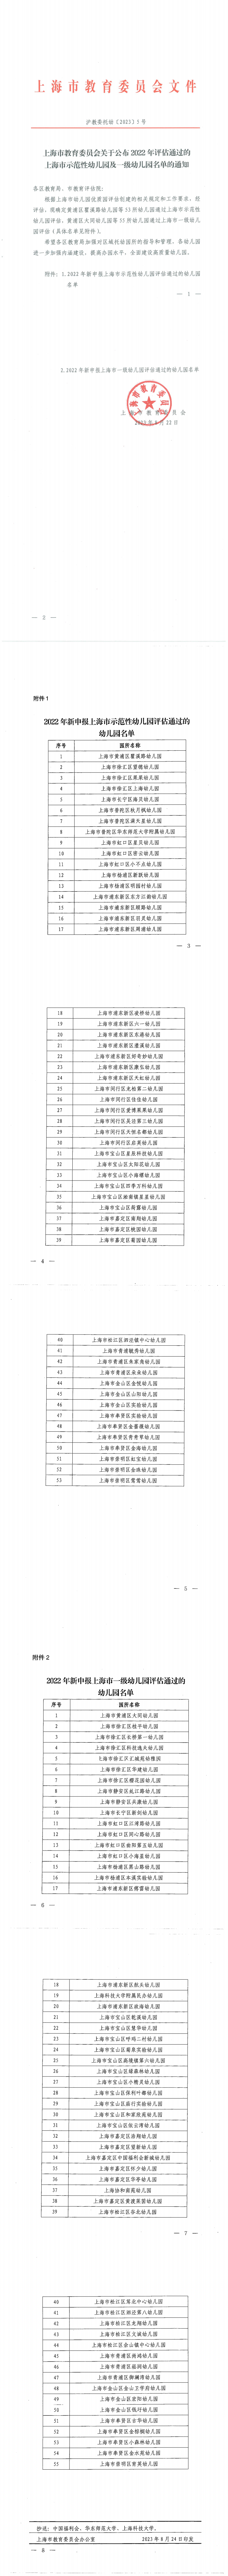 上海市教育委员会关于公布2022年评估通过的上海市示范园幼儿园及一级幼儿园名单的通知_00.png